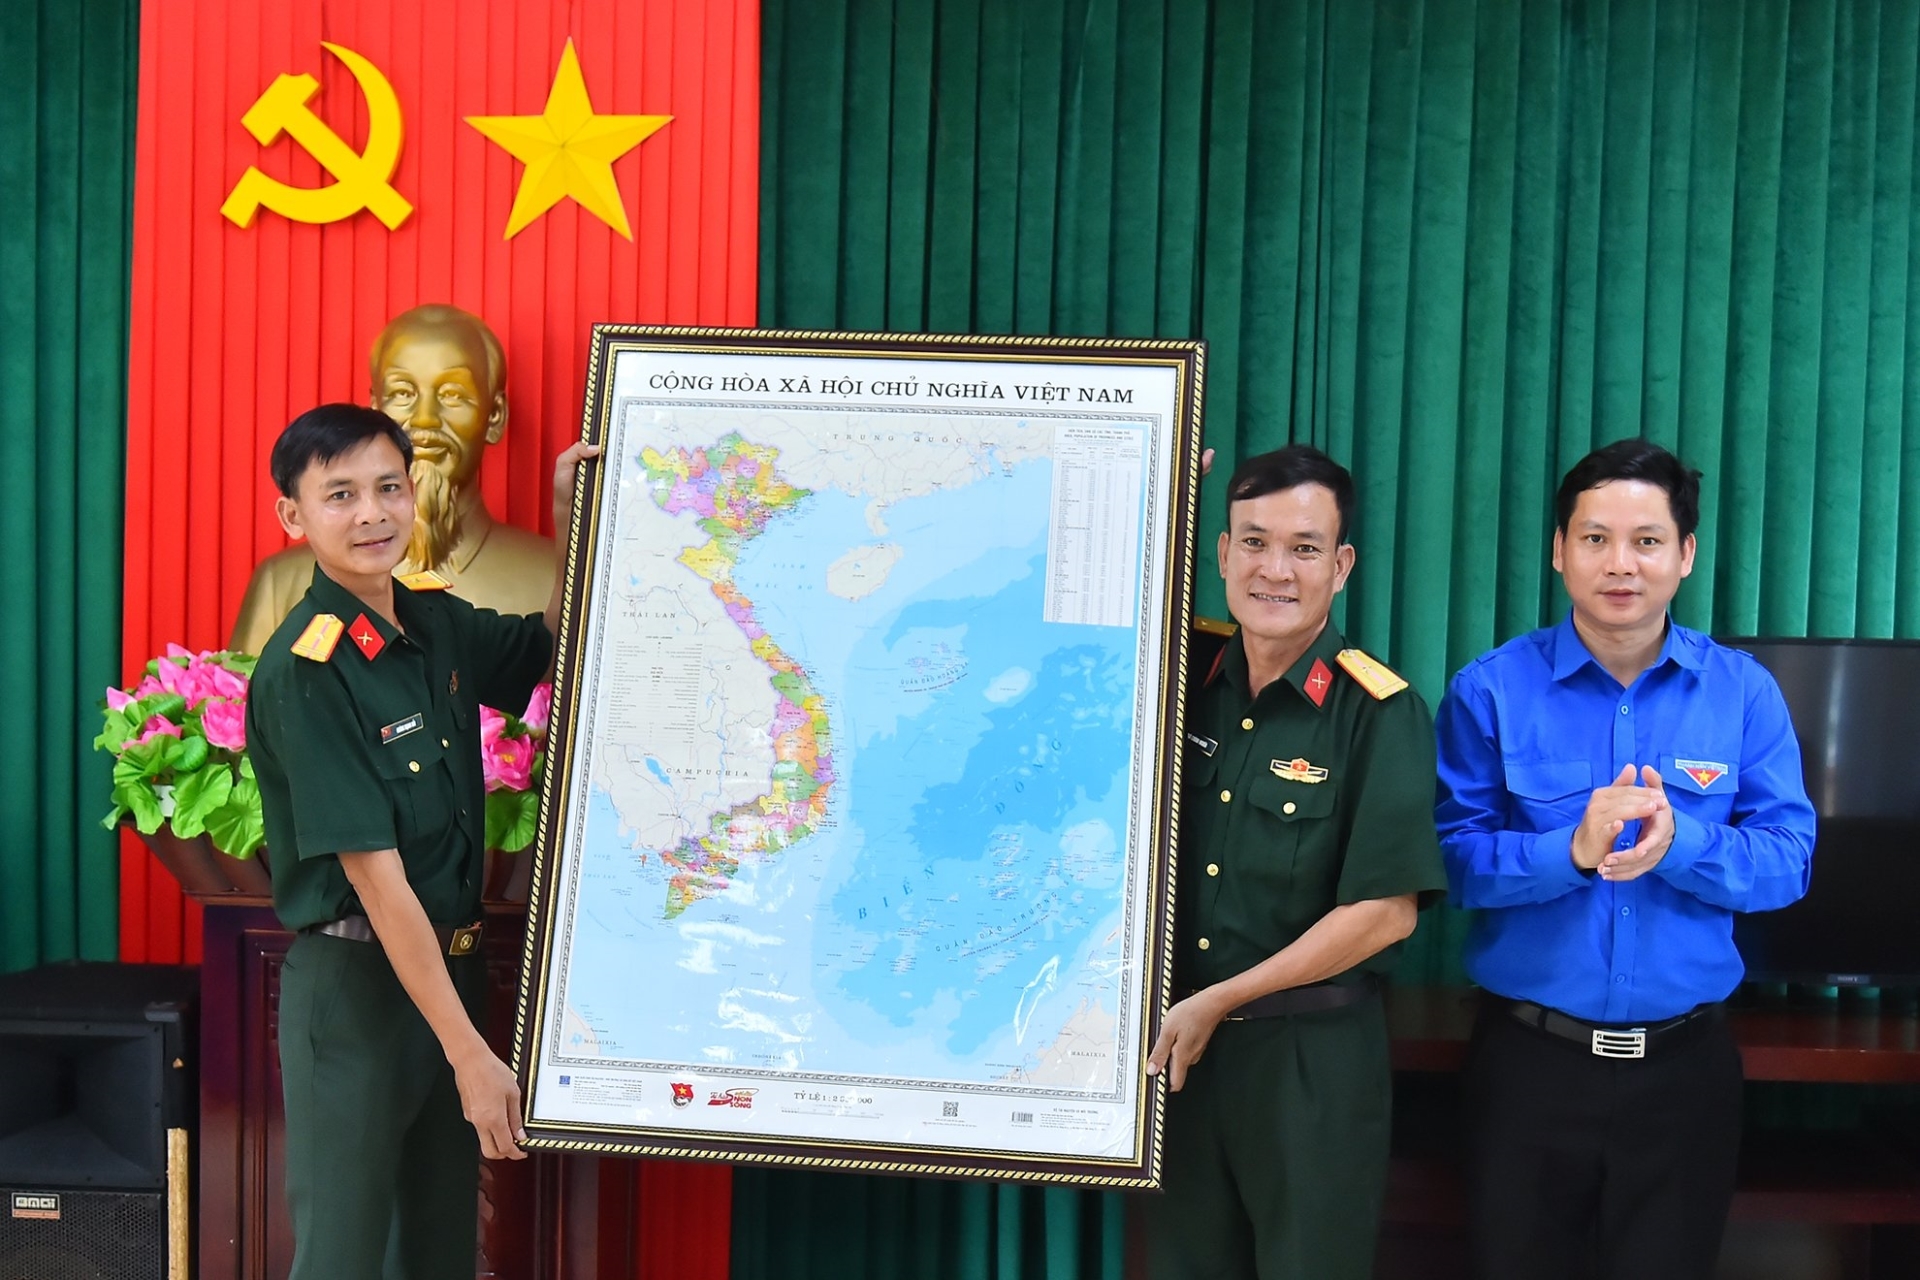 Đồng chí Đặng Đại Bàng, Ủy viên Ban Chấp hành Trung ương Đoàn, Tỉnh ủy viên, Bí thư Tỉnh đoàn Quảng Bình trao quà là tấm bản đồ Việt Nam tặng Trung đội Đảo La.